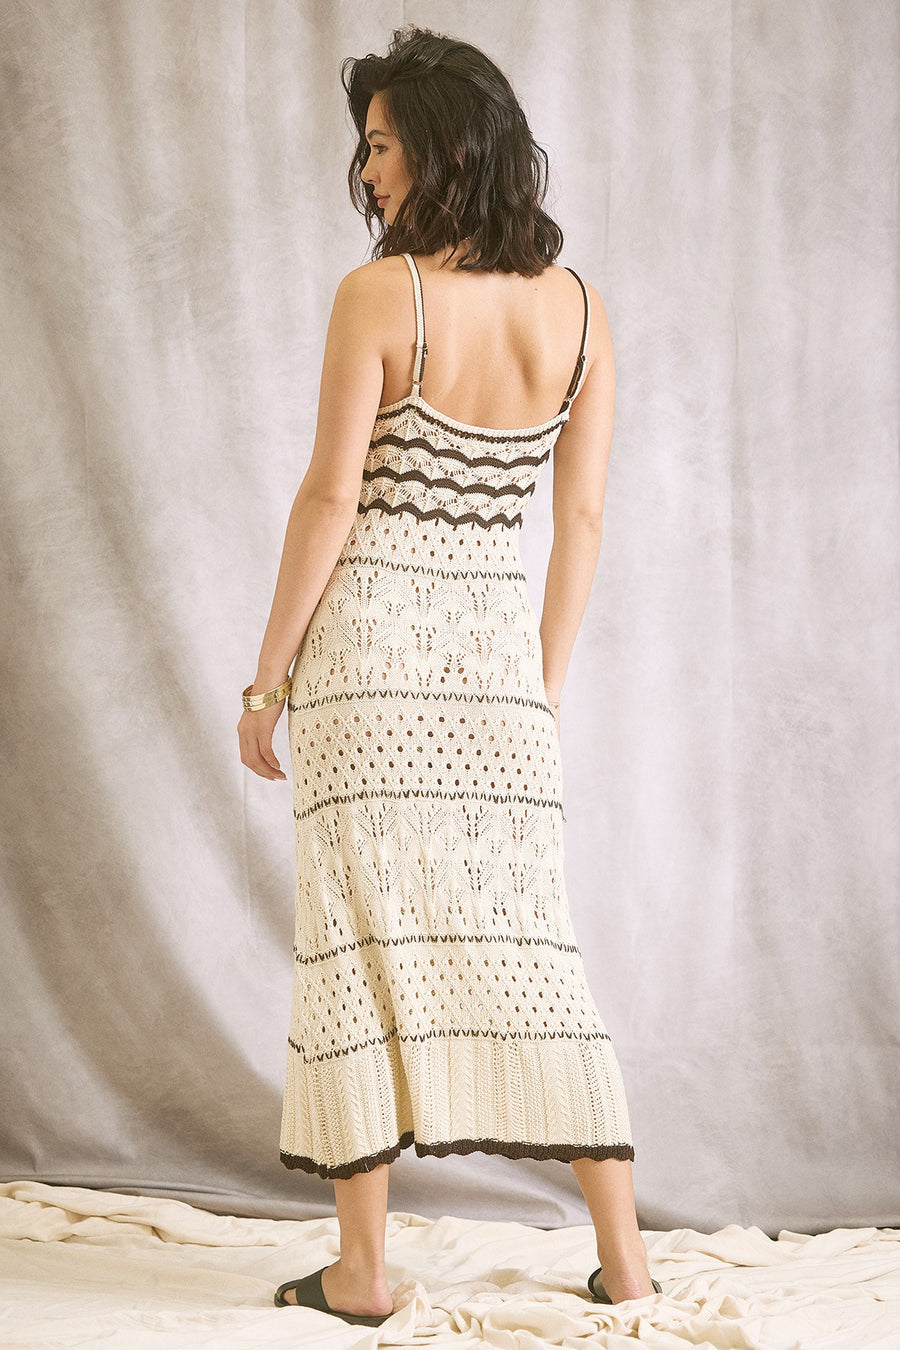 The Malli Crochet Dress